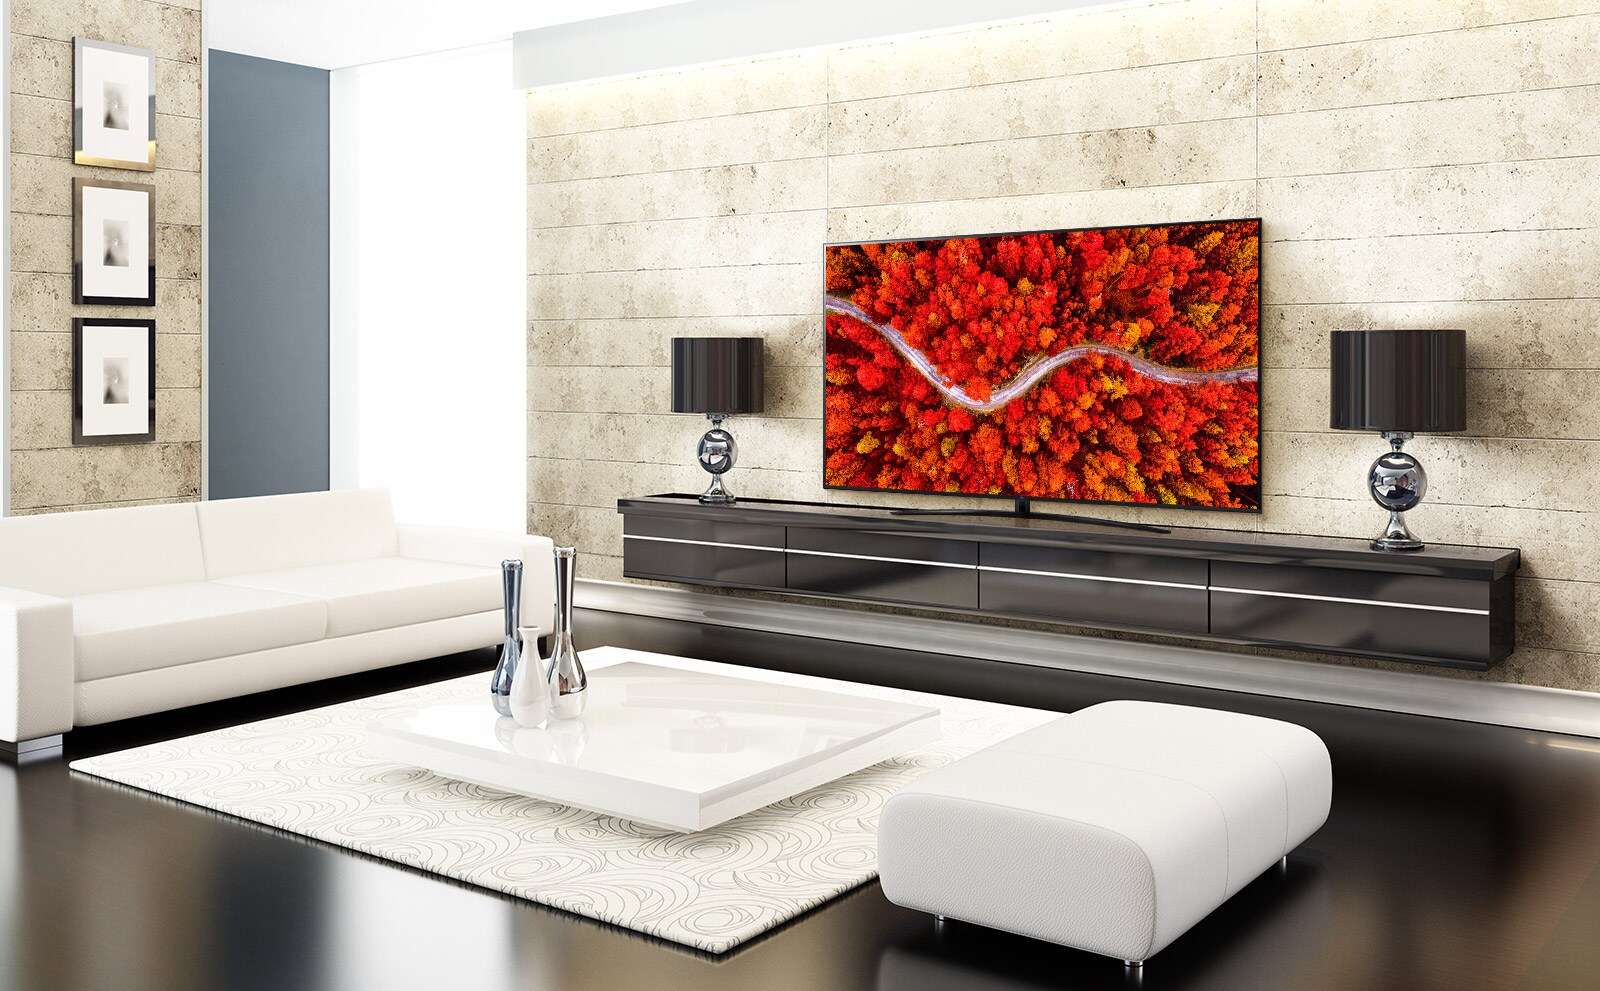 Un salon luxueux, avec un téléviseur affichant une vue aérienne de forêts en rouge.